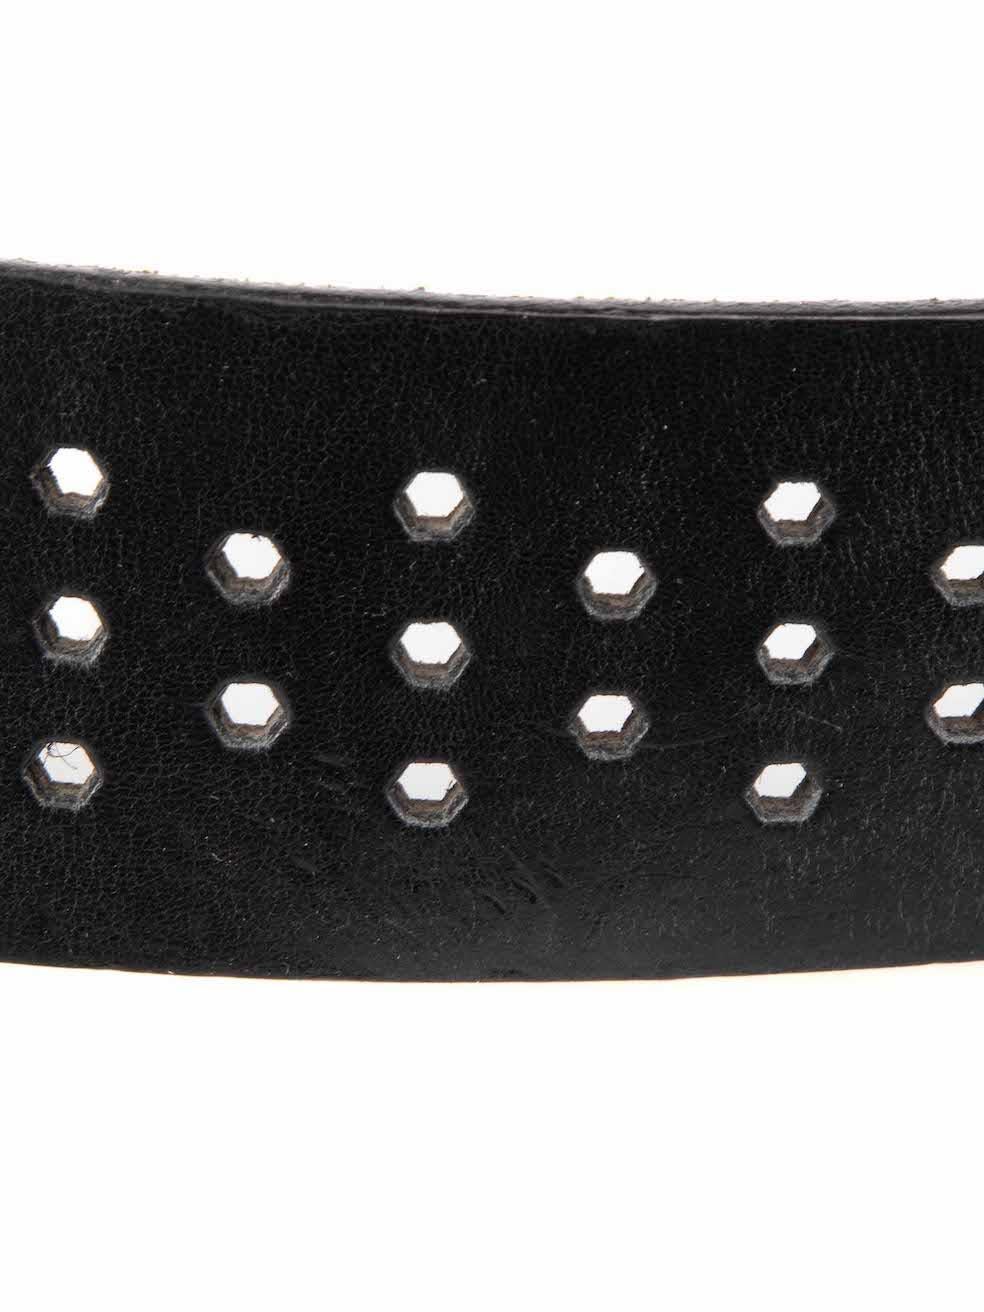 Dolce & Gabbana Vintage Black Leather Belt 2